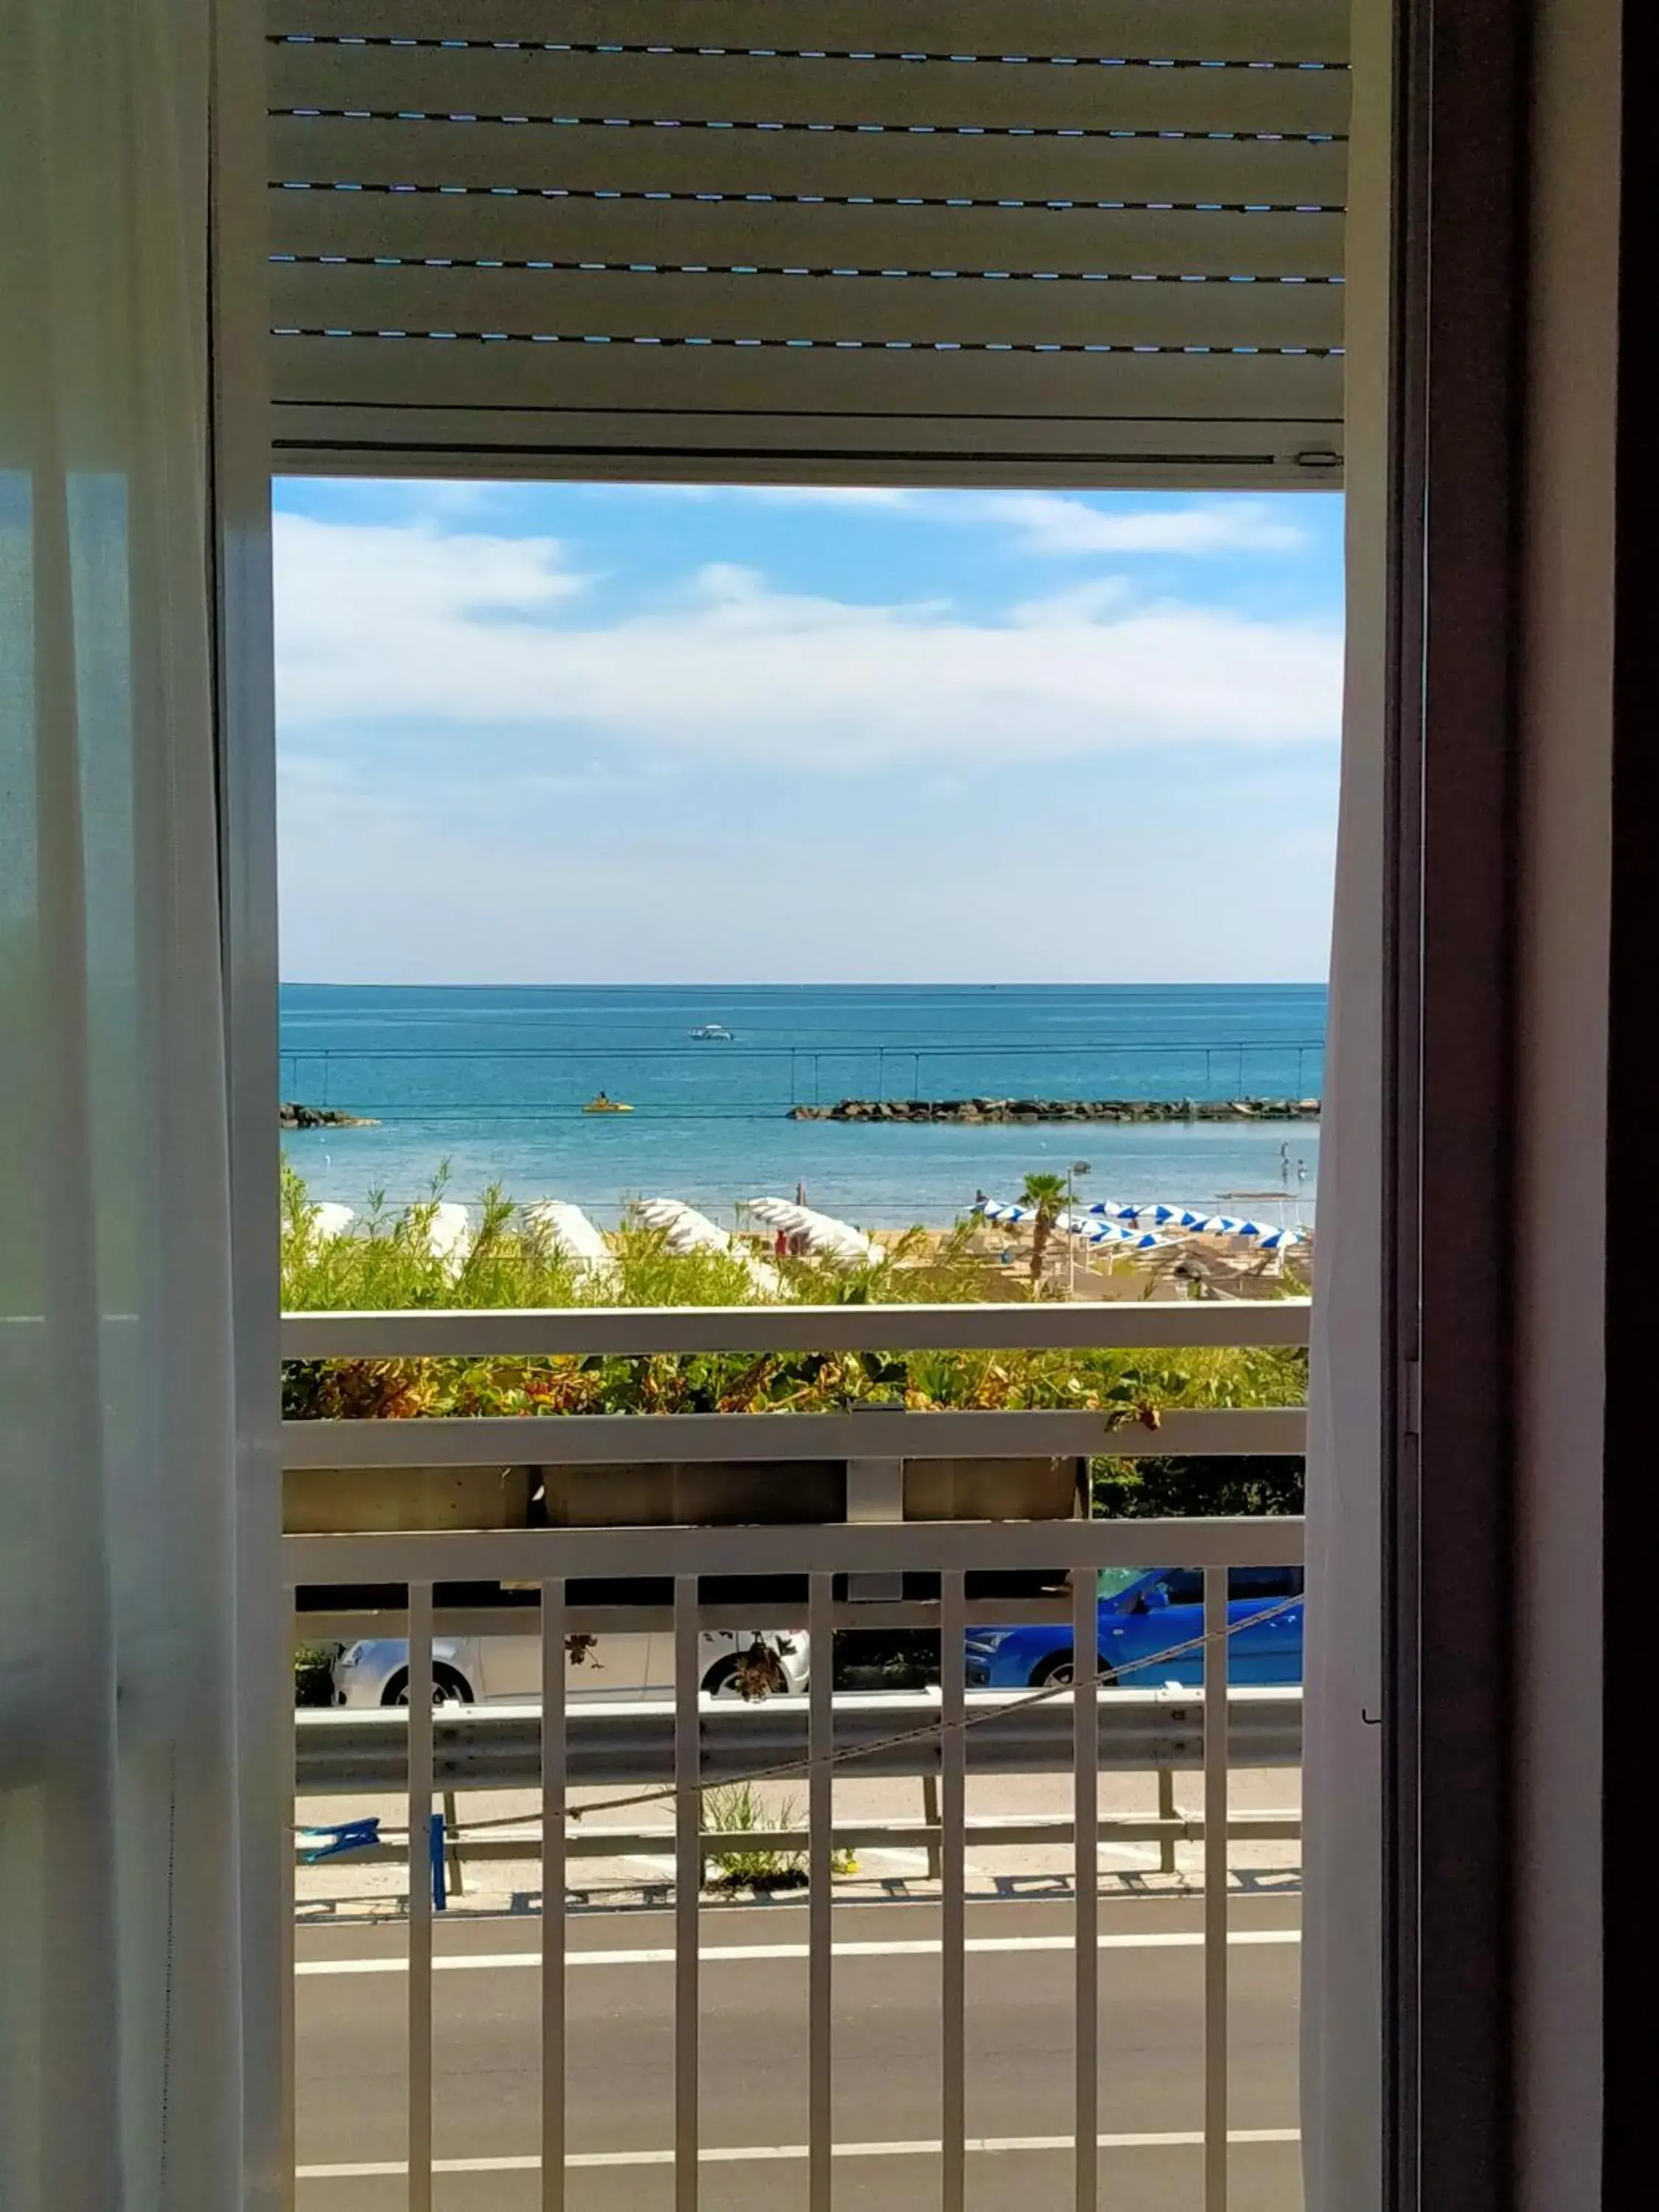 Sea View in Hotel Ristorante Miramare